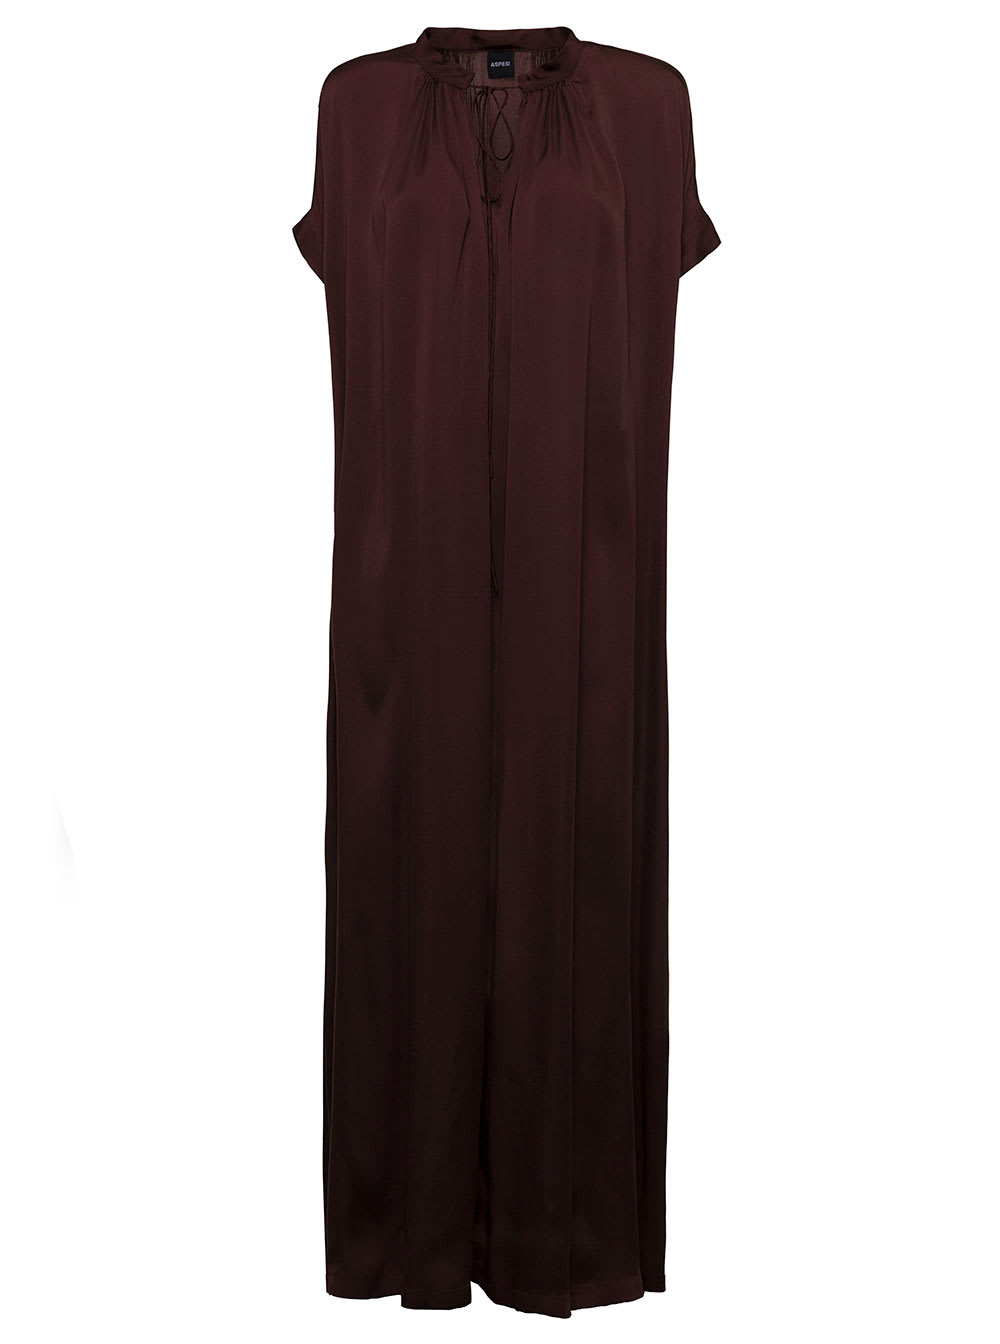 Aspesi Ponge Brown Silk Long Dress